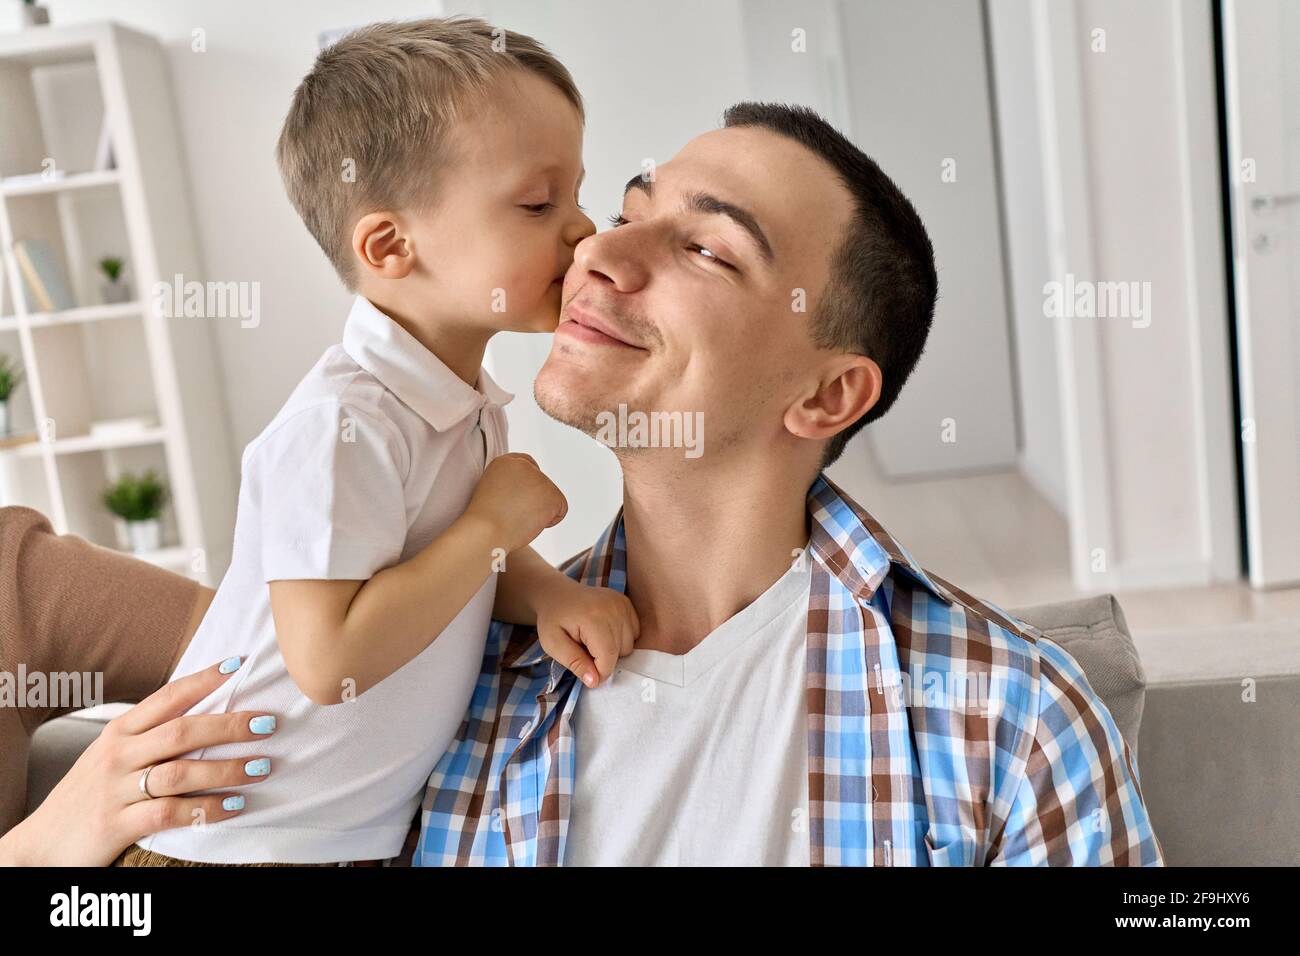 Niedliches Kleinkind Kind Sohn küssen lächelnden Vater auf der Wange zu Hause. Stockfoto